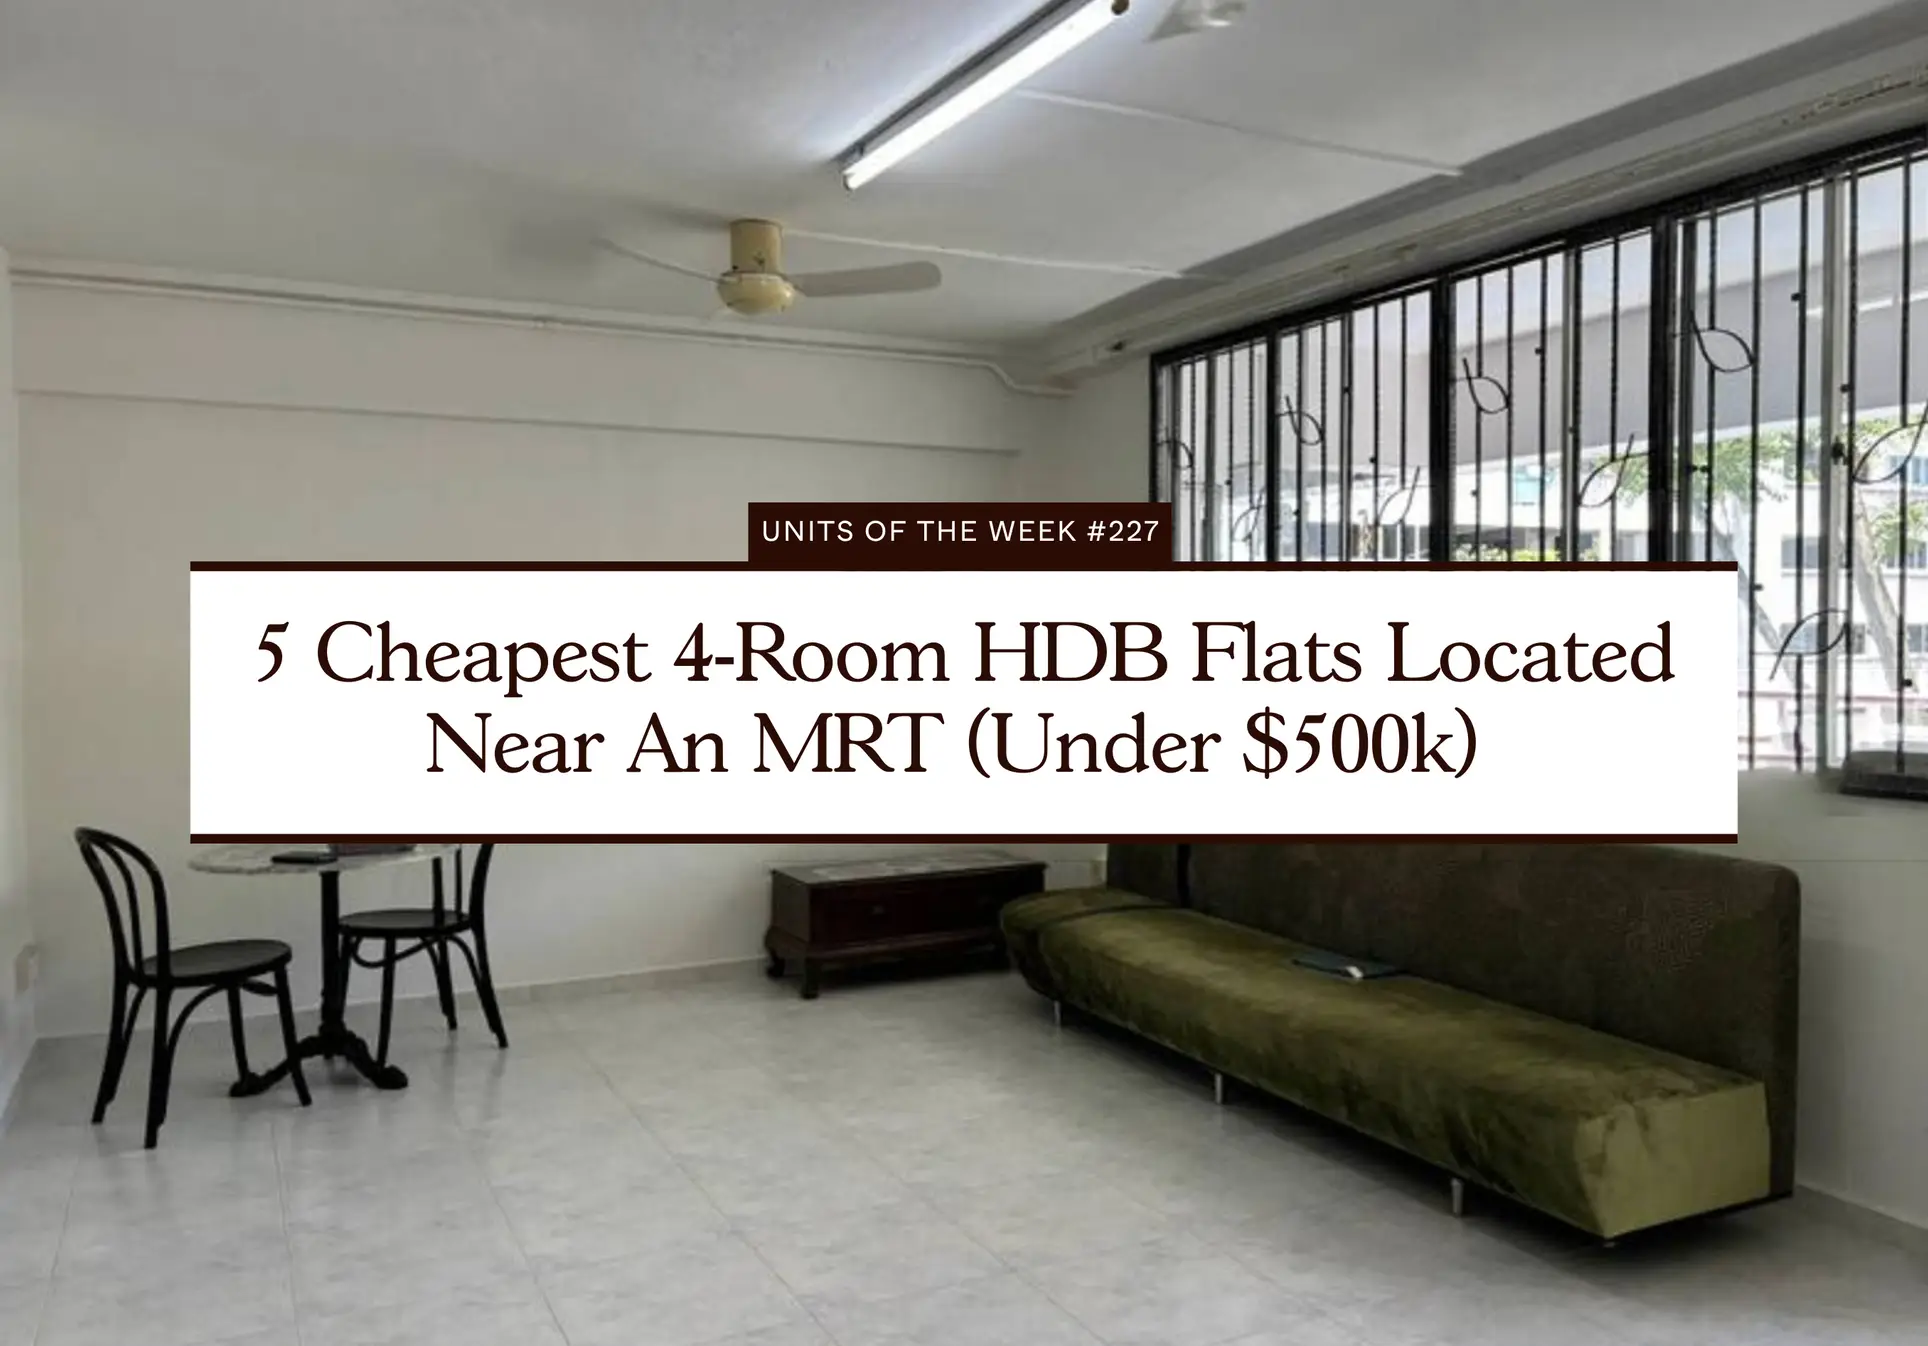 5 Cheapest 4 Room HDB Flats Located Near An MRT Under 500k